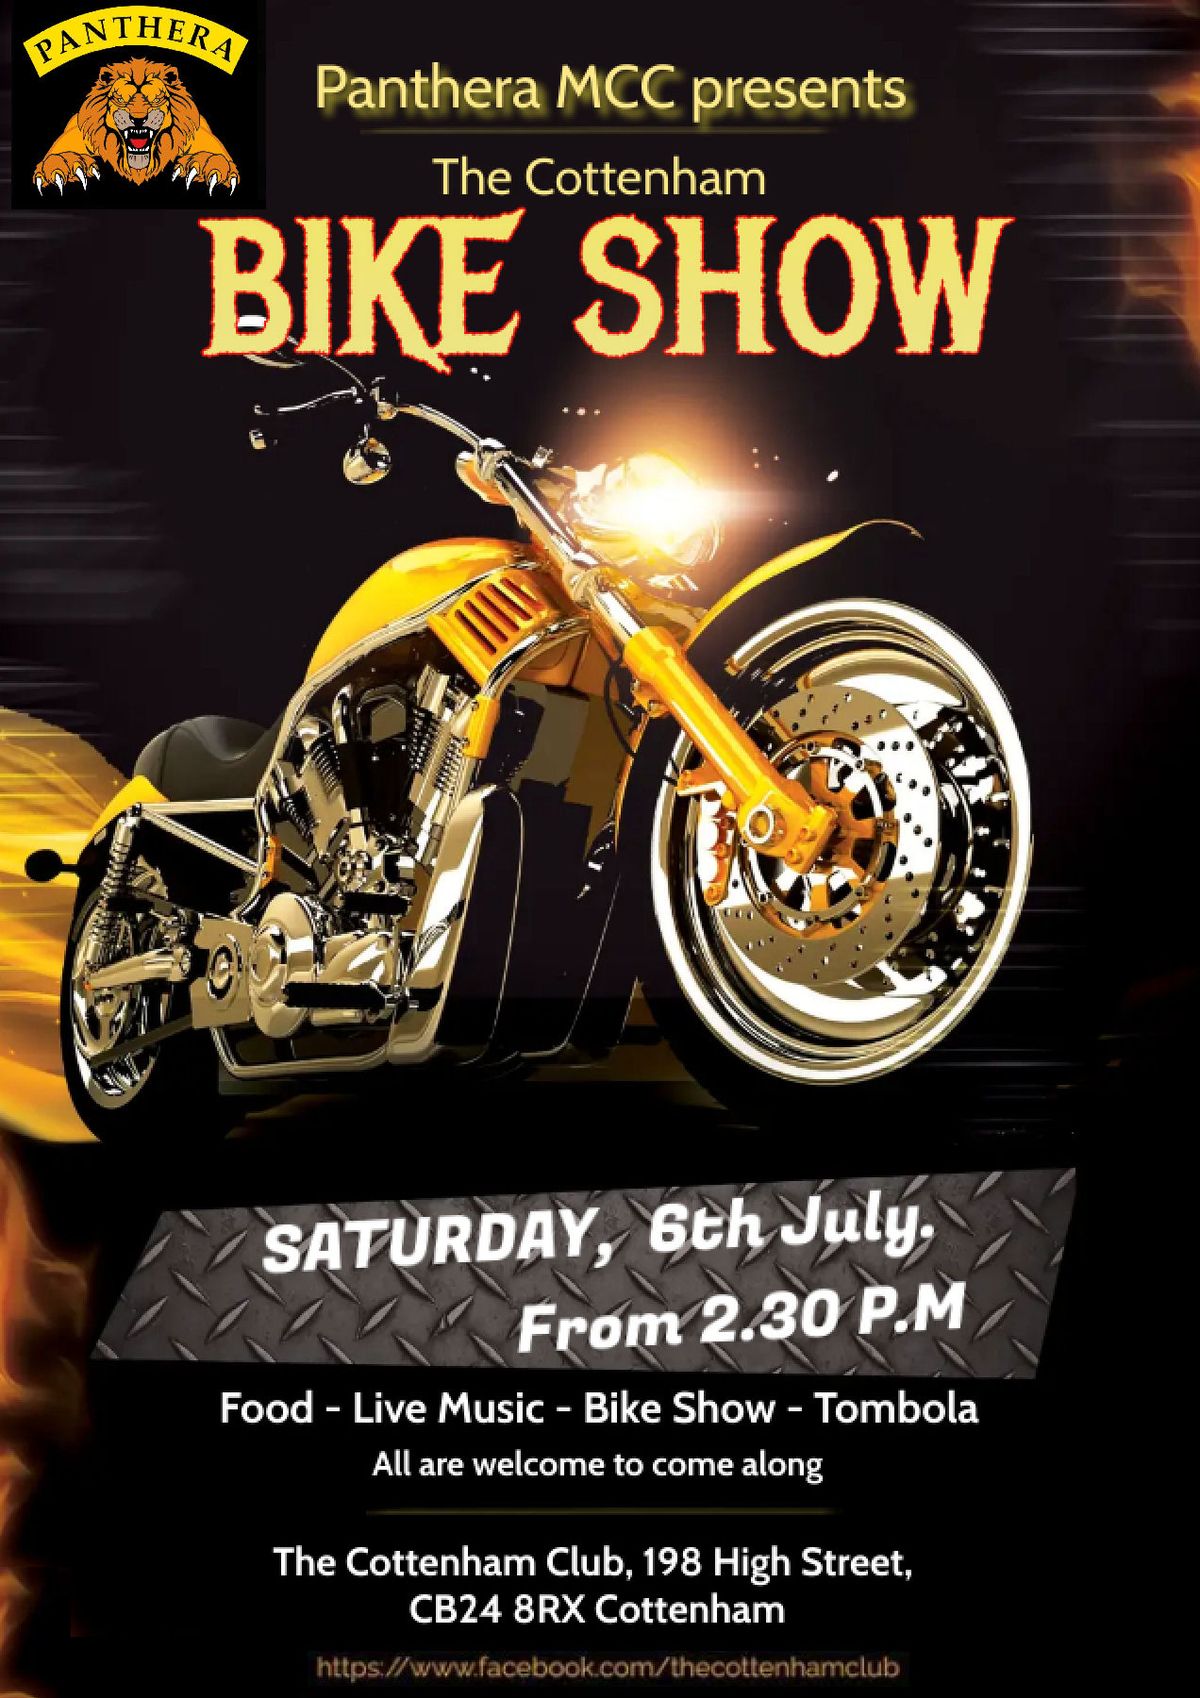 The Cottenham Bike Show